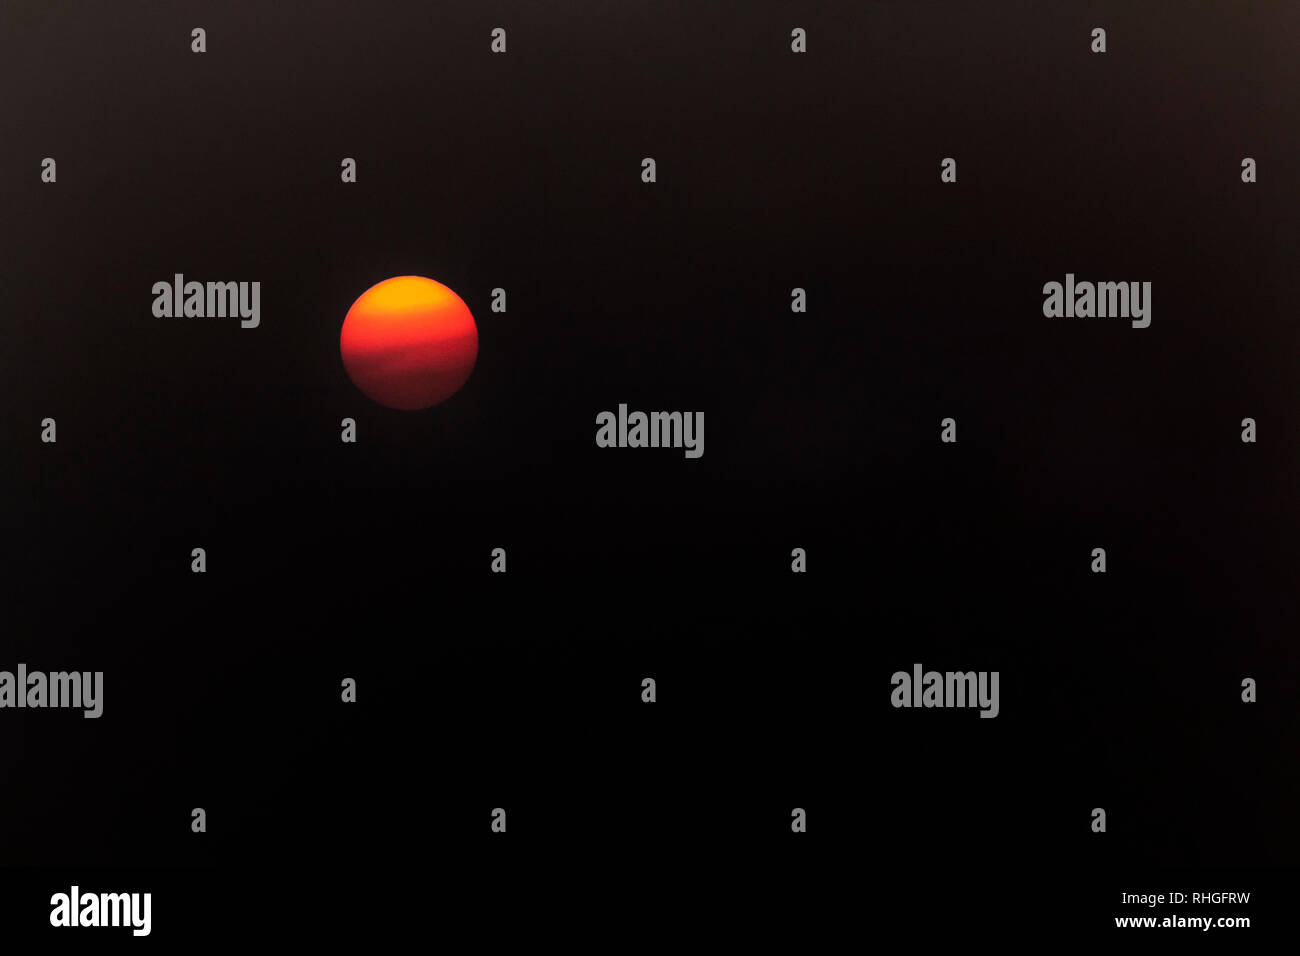 Le soleil capturées à l'aide d'un filtre, montrant les nuages passant dans front​ d'un soleil orange Banque D'Images